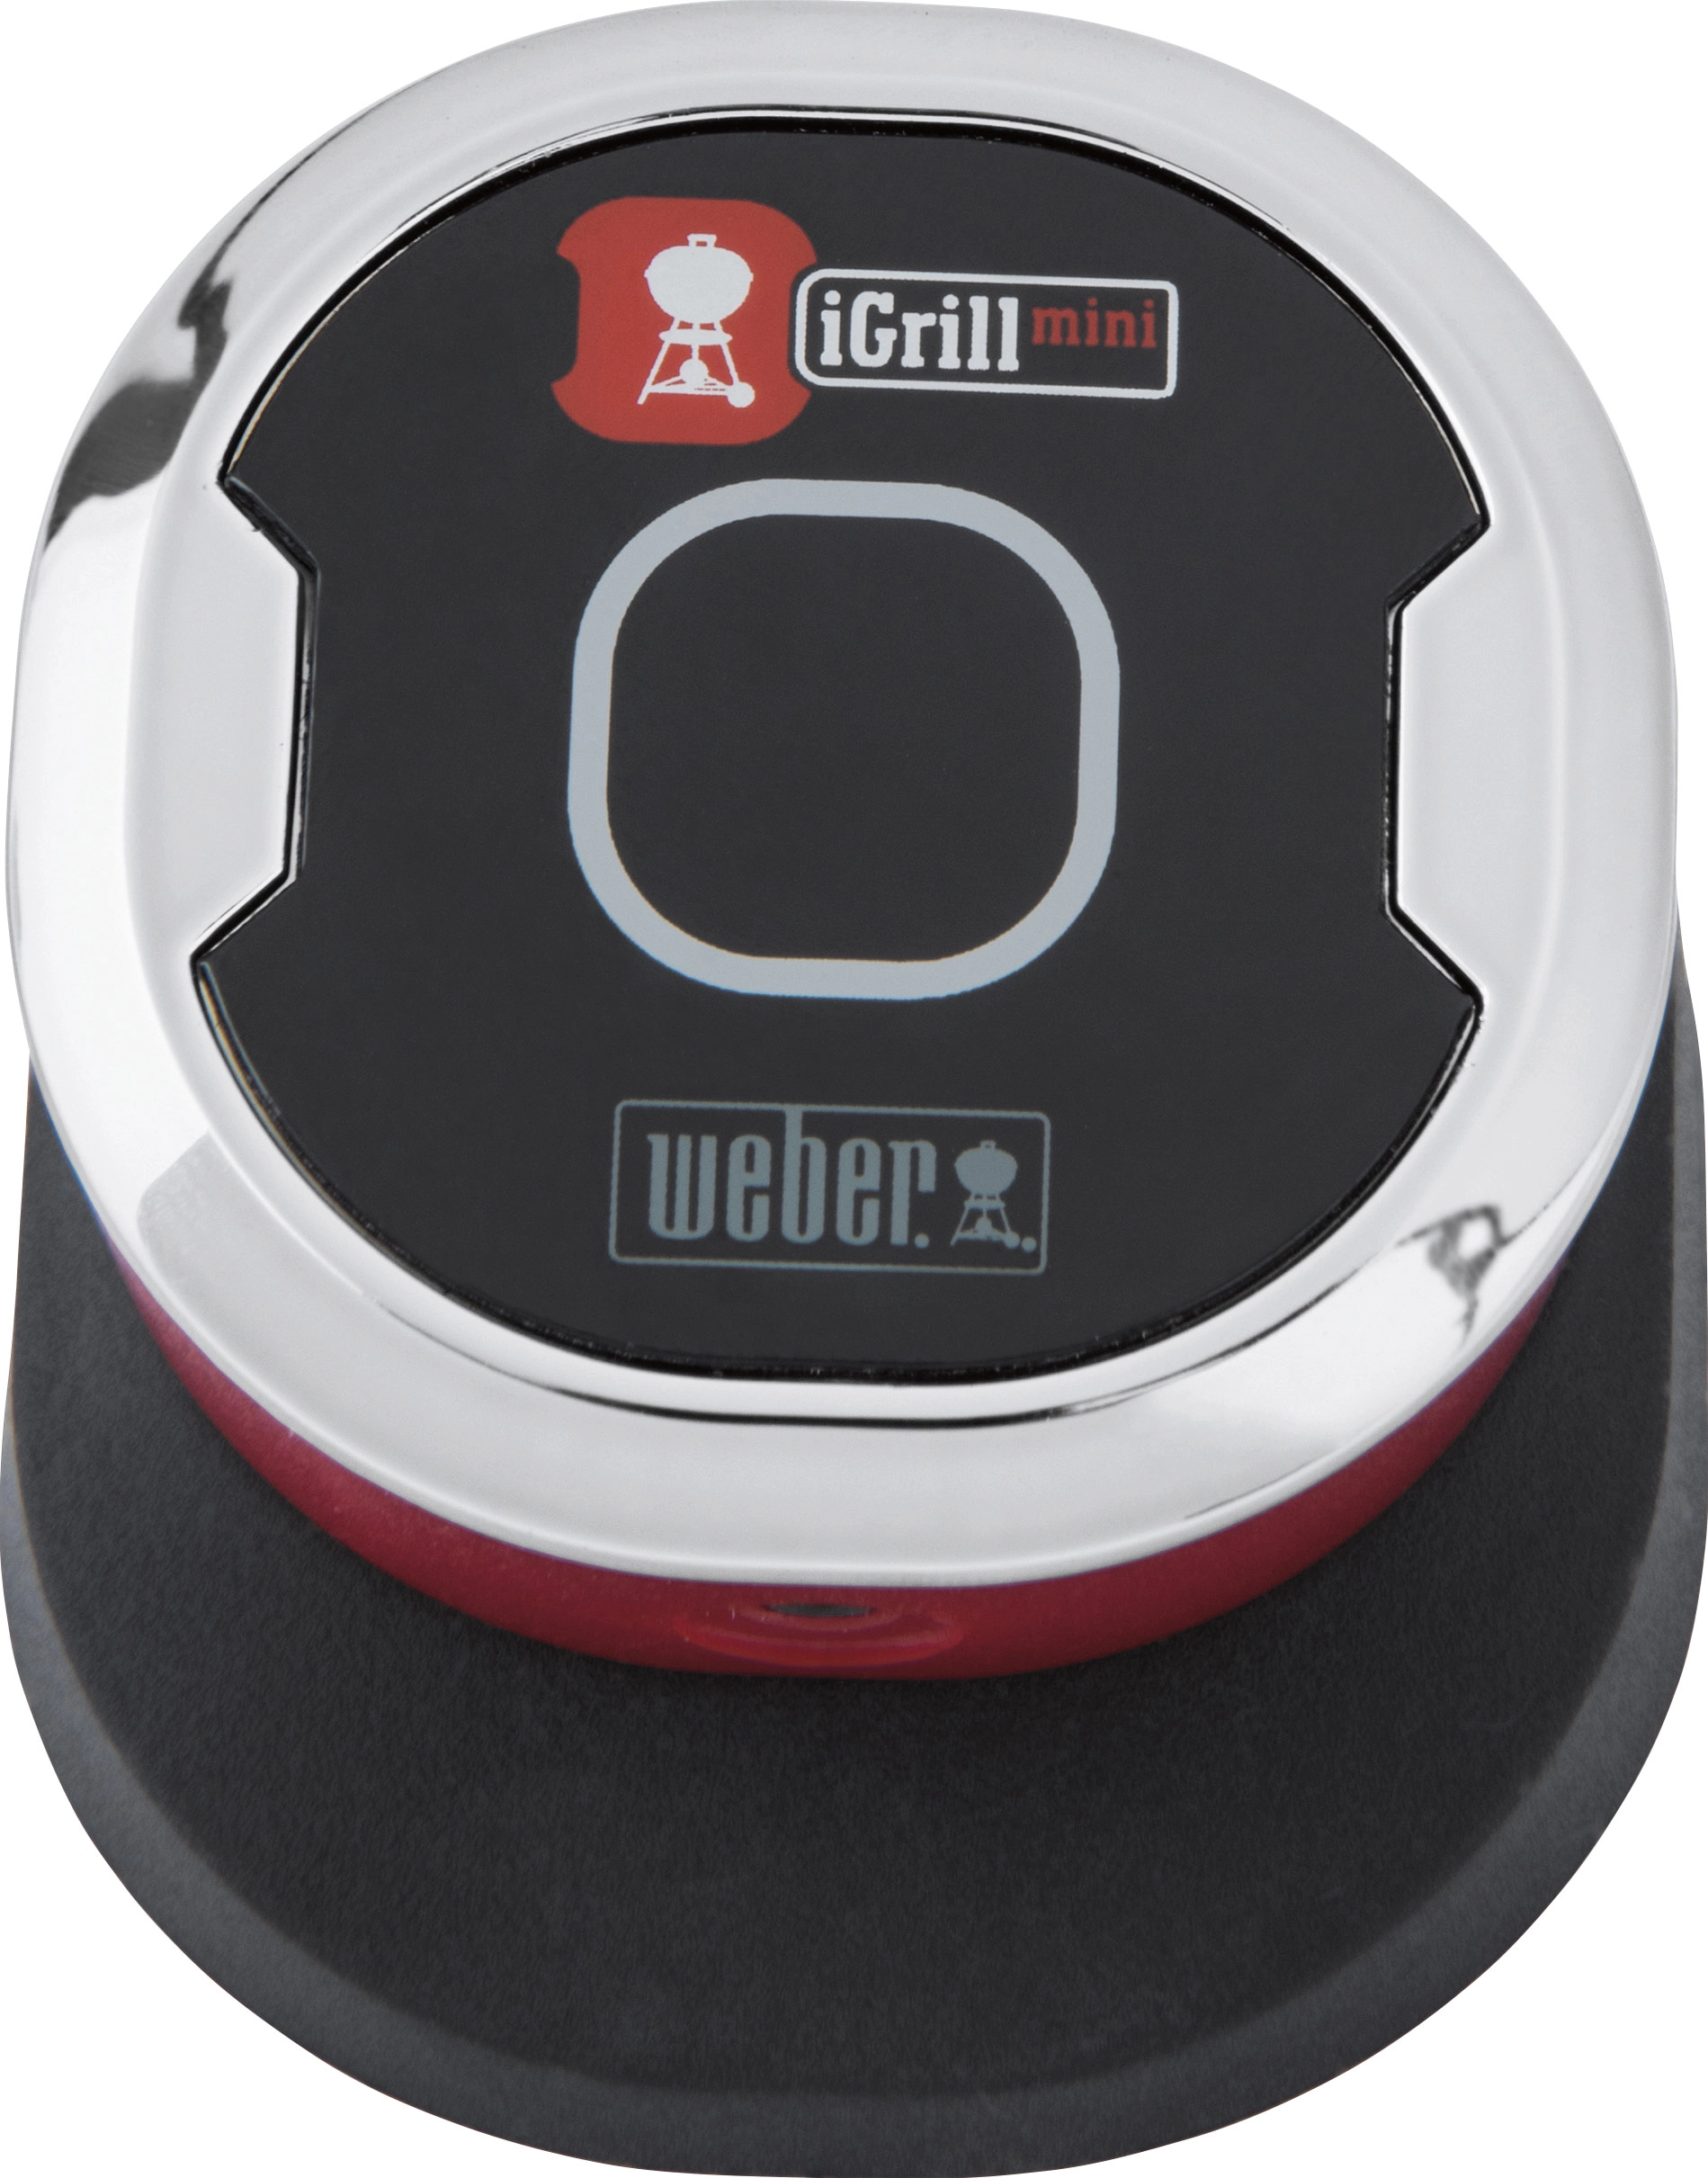 Weber Bluetooth-Thermometer und Timer iGrill Mini mit einem Messfühler  kaufen bei OBI